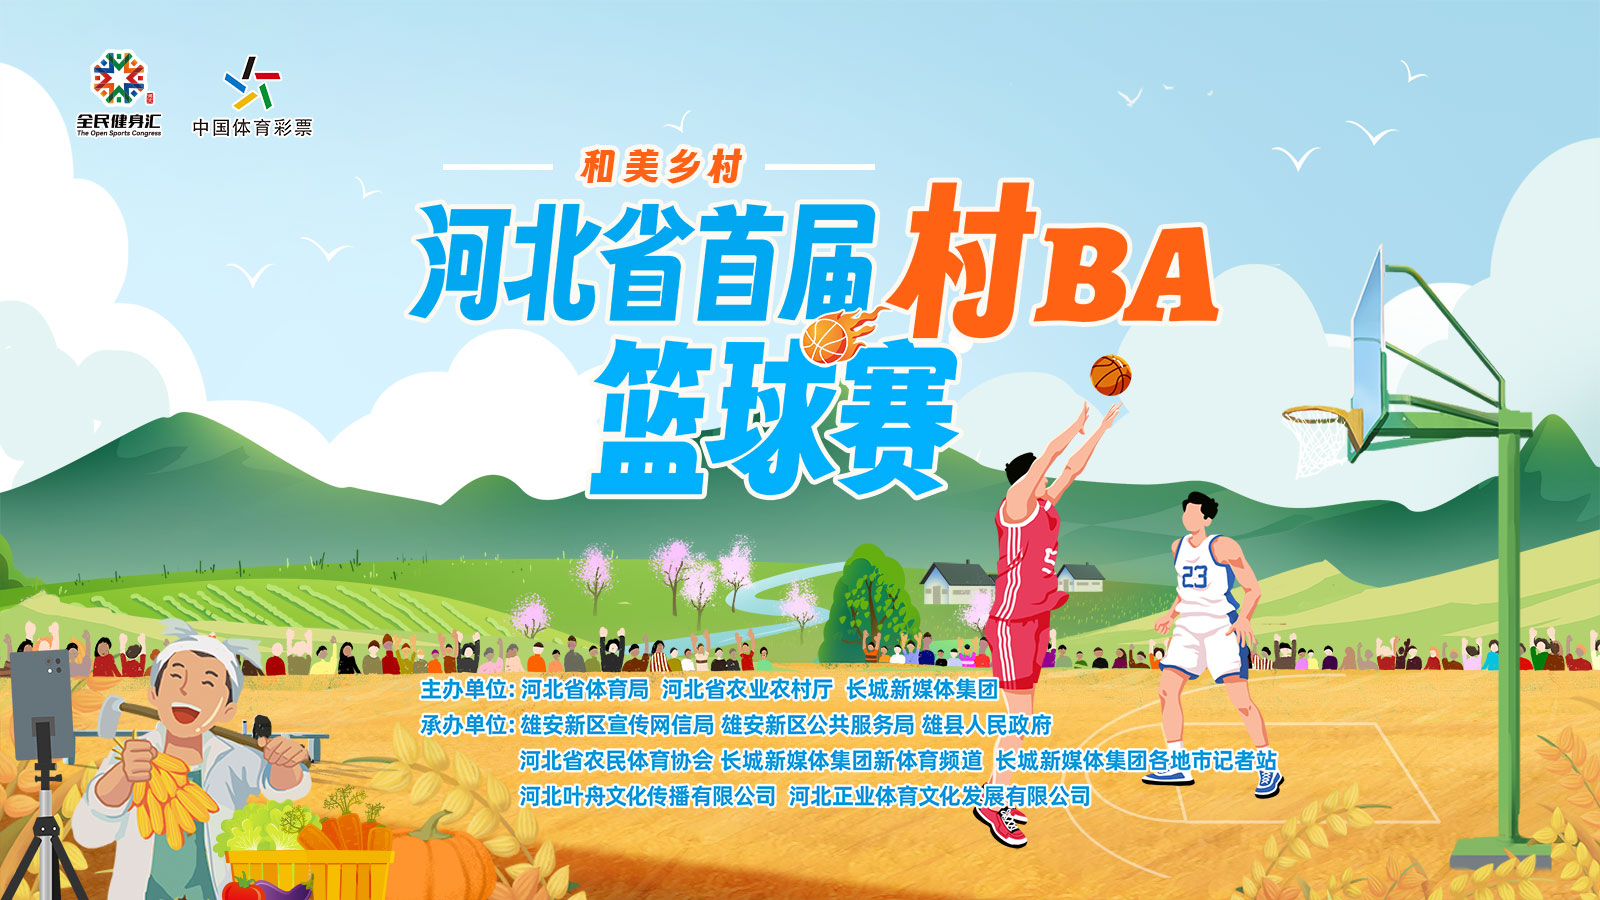 长城直播 | “和美乡村”河北省首届“村BA”篮球赛开幕式